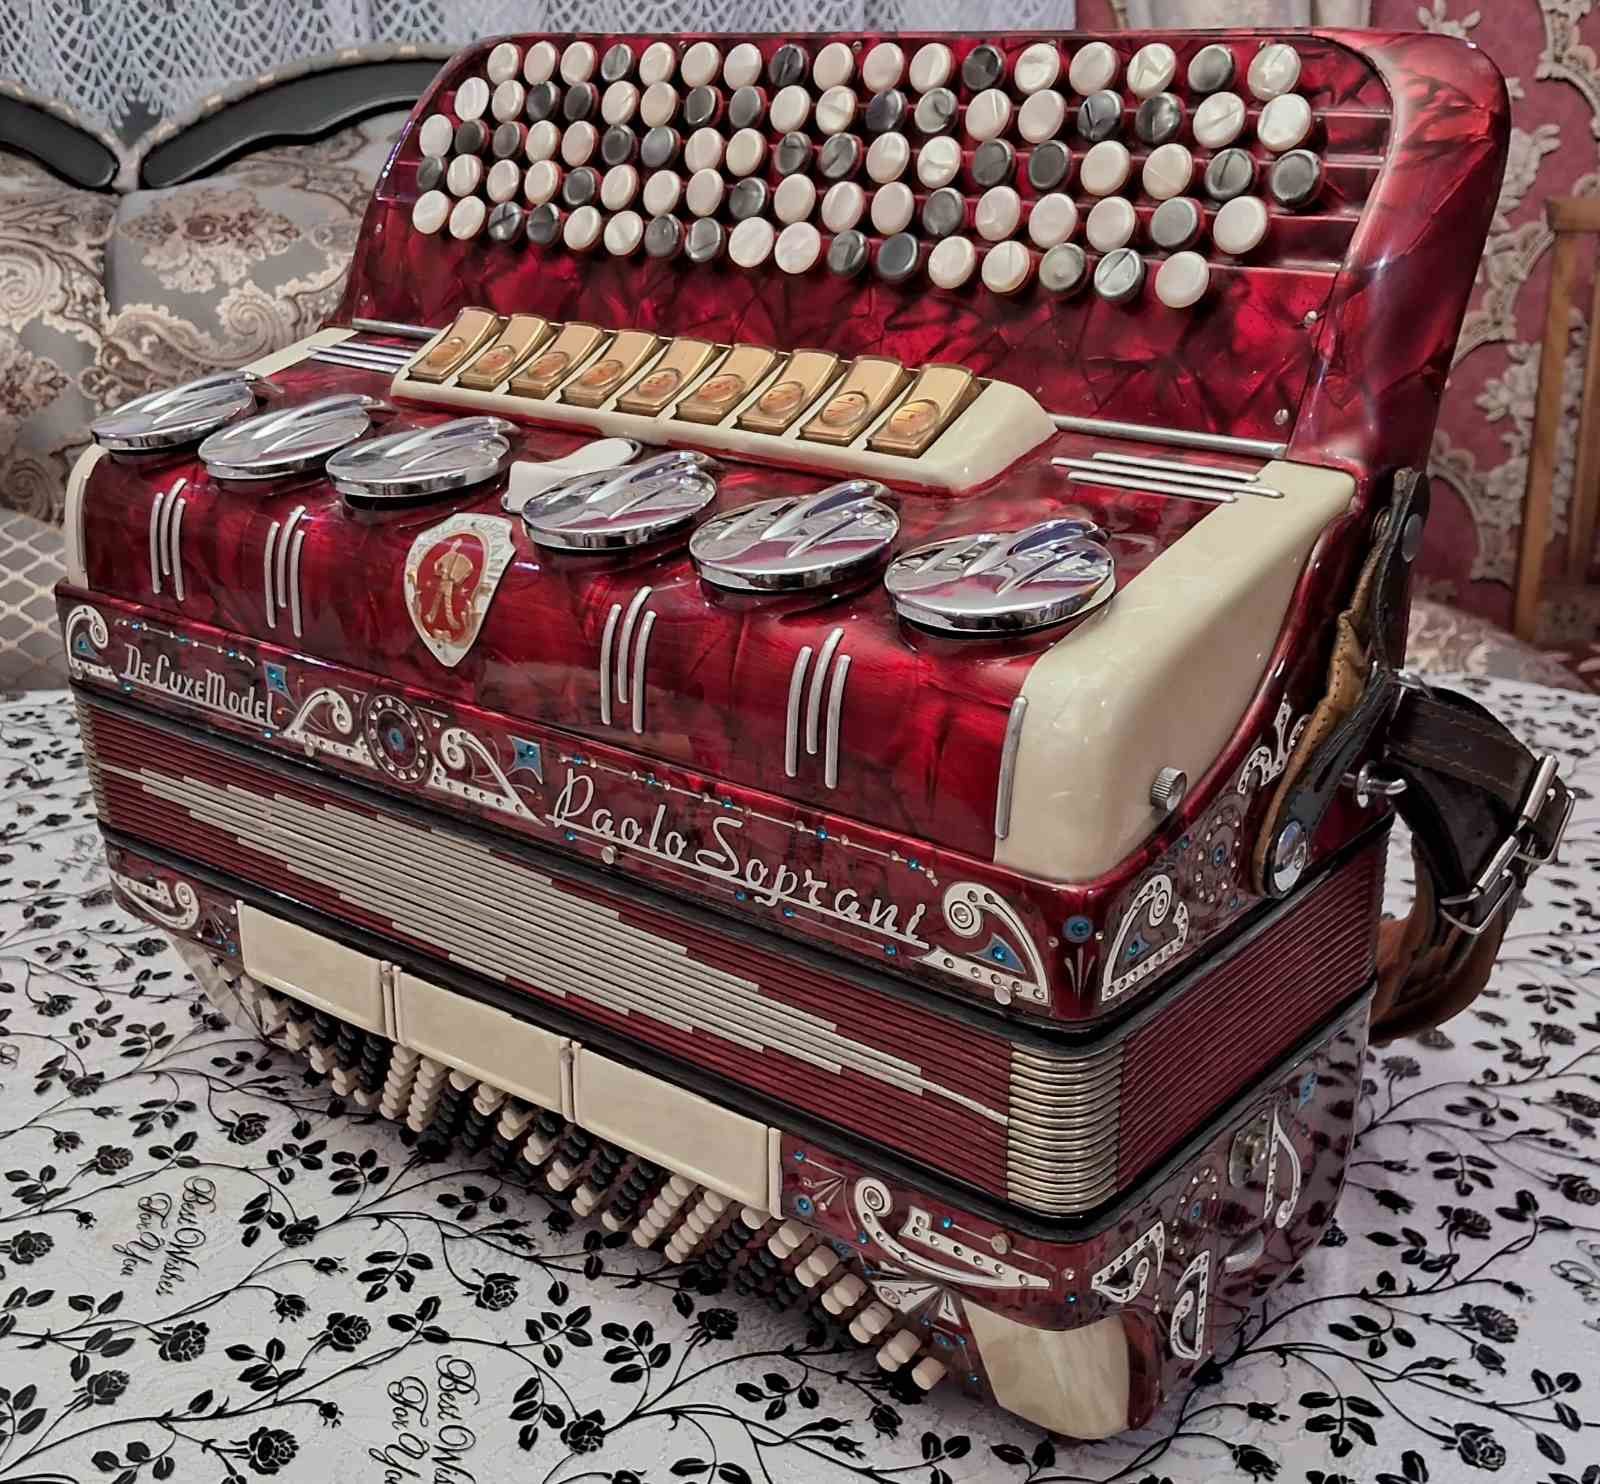 Баян пятирядний італійський PAOLO SOPRANI , акордеон аккордеон